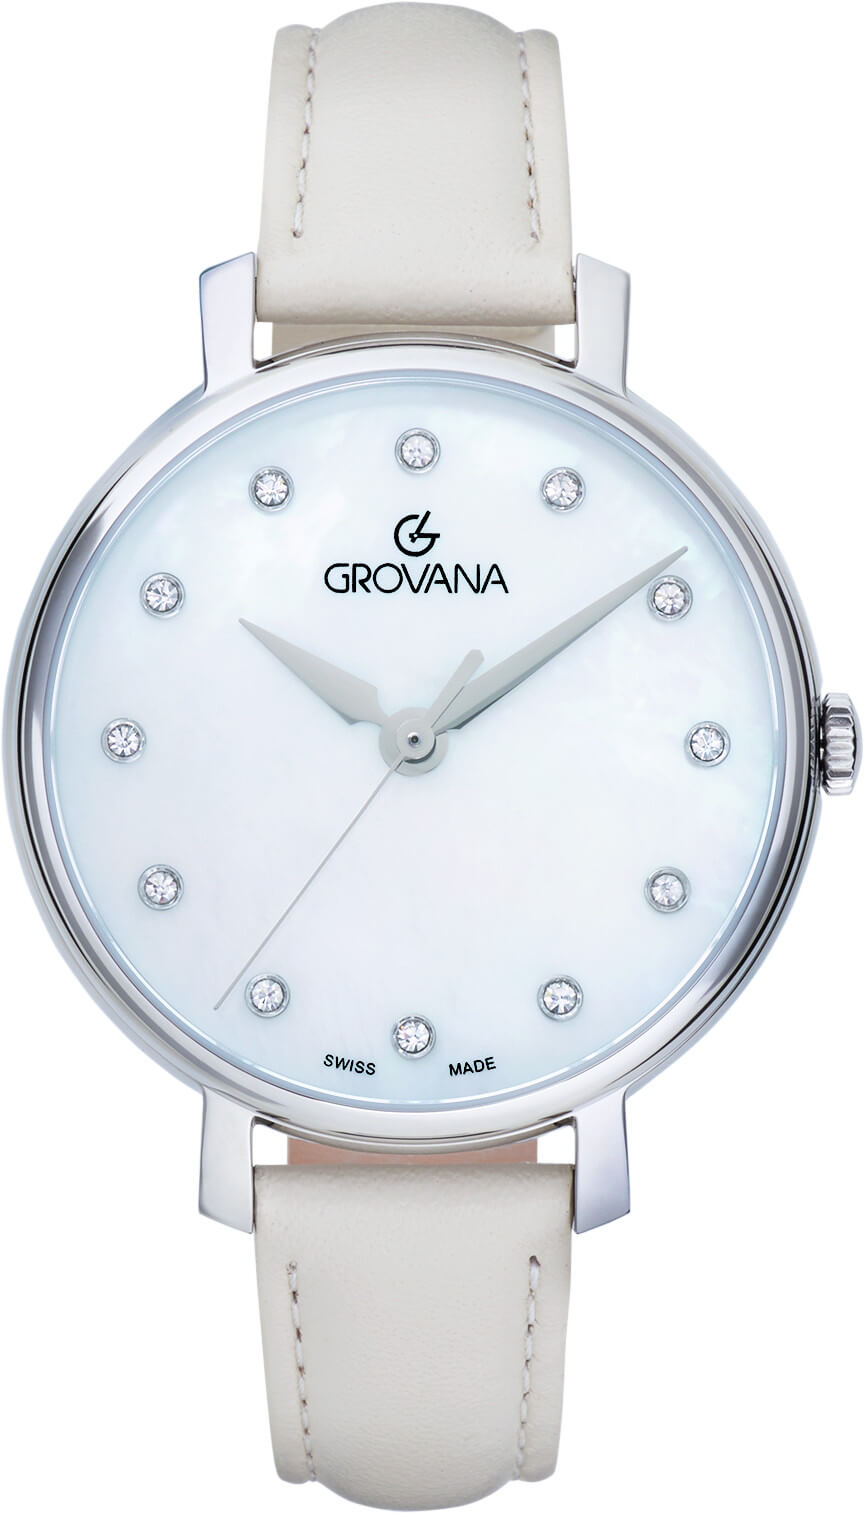 Grovana -  Módní hodinky 4441.1538